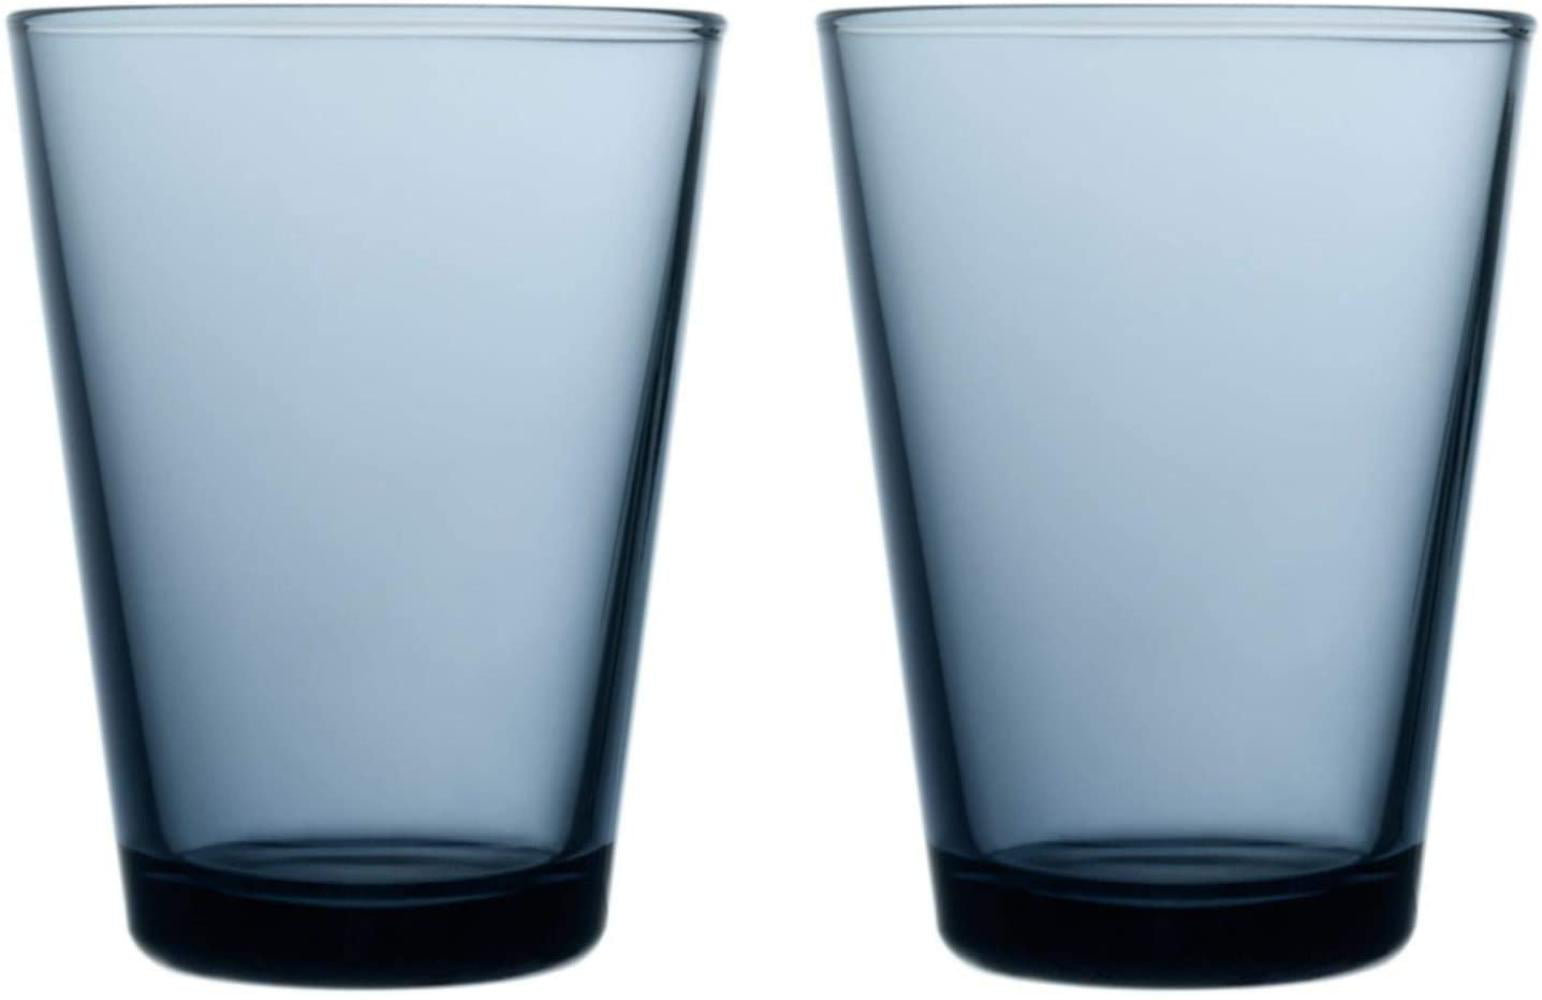 Kosta Boda Bruk 11.56 Ounce Tumbler Pair Large Glass 